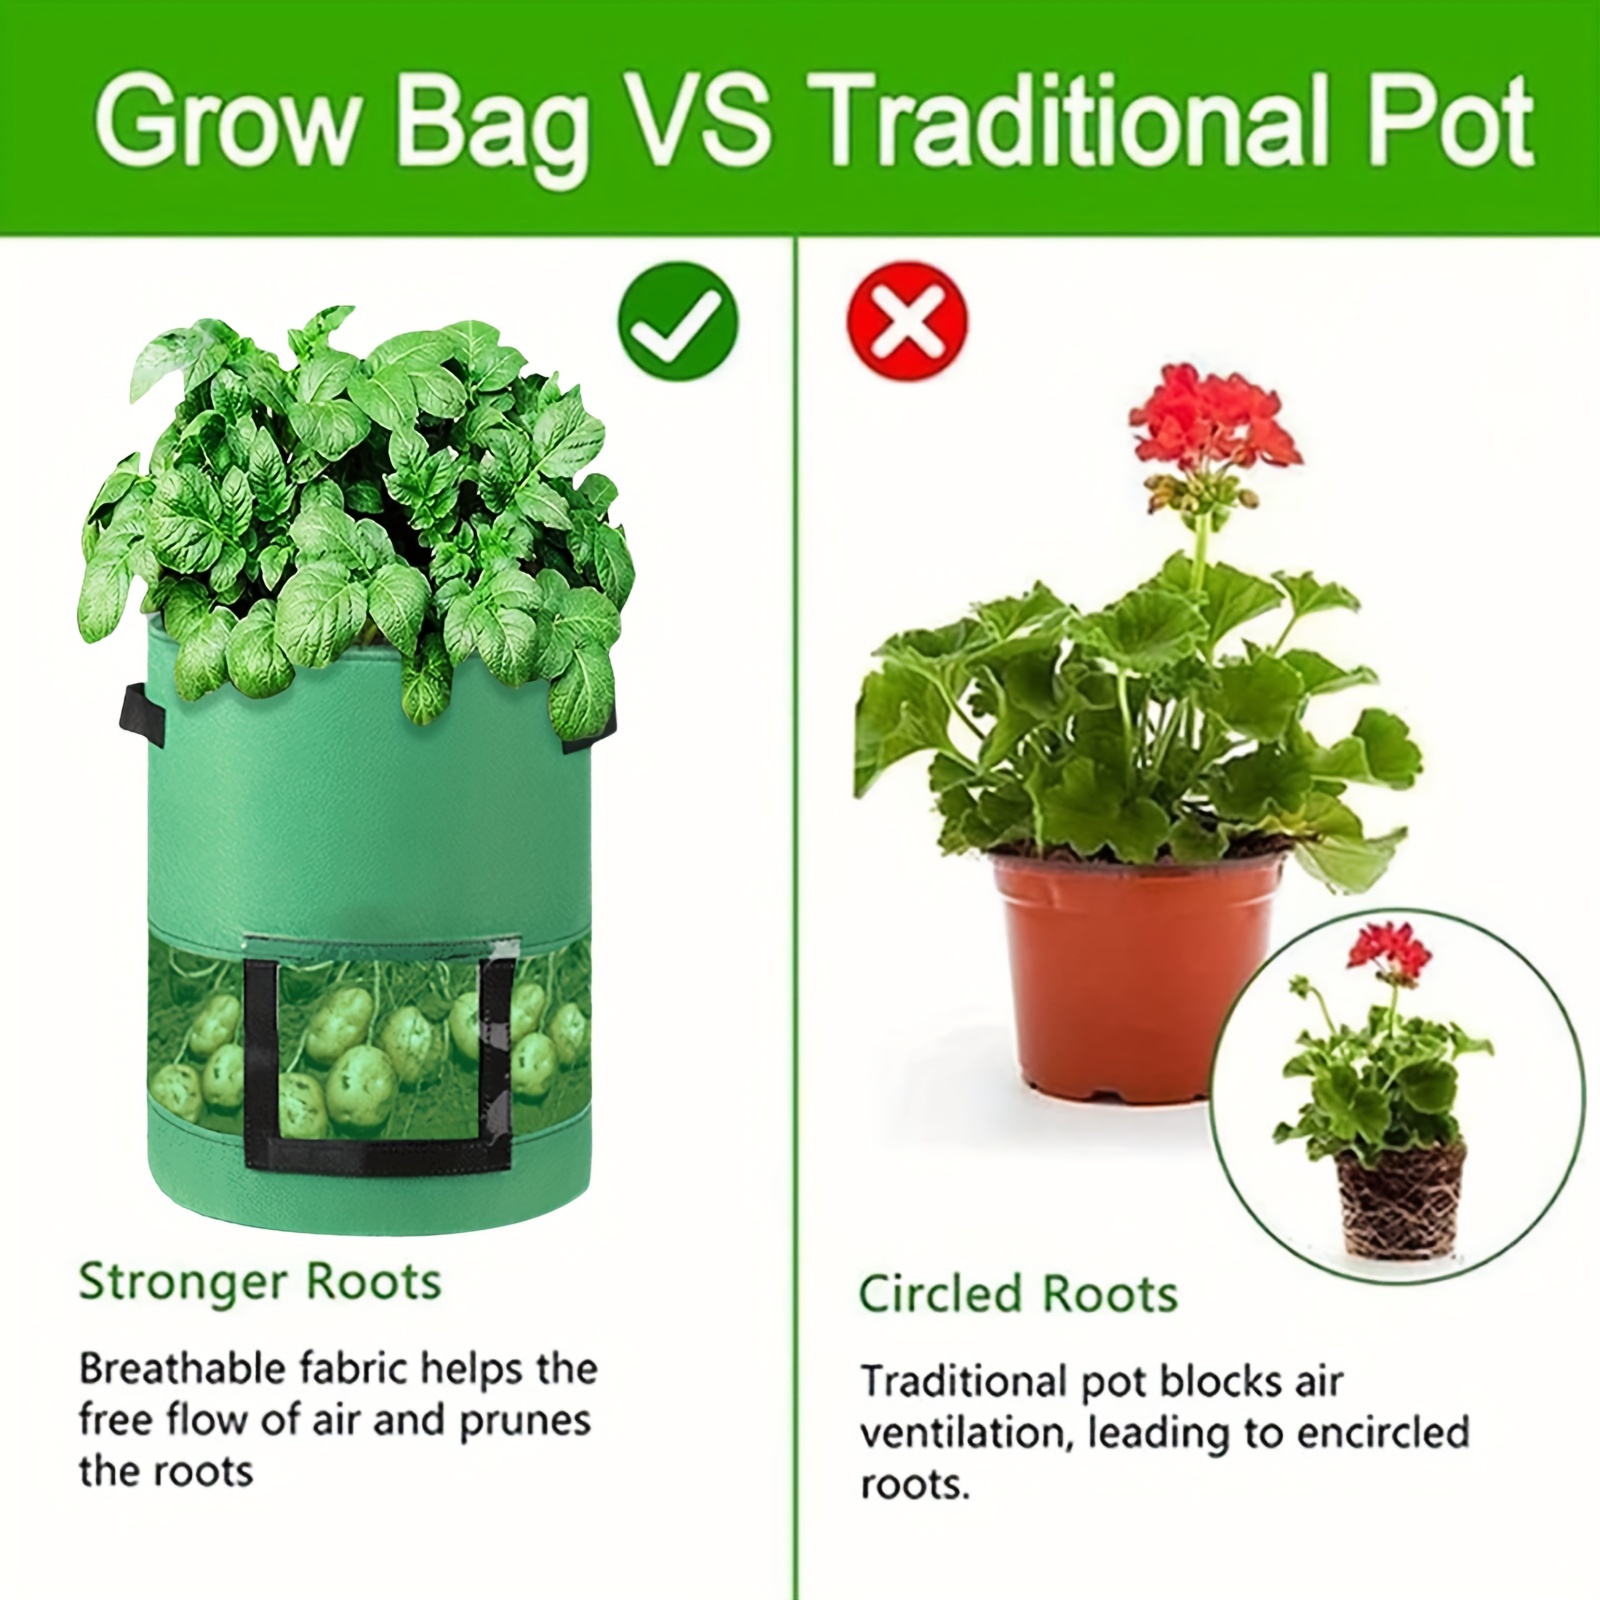 2pcs 10 Gallon Grow Bags NonWoven Pots Garden Vegetable Planting Bags for  Potato